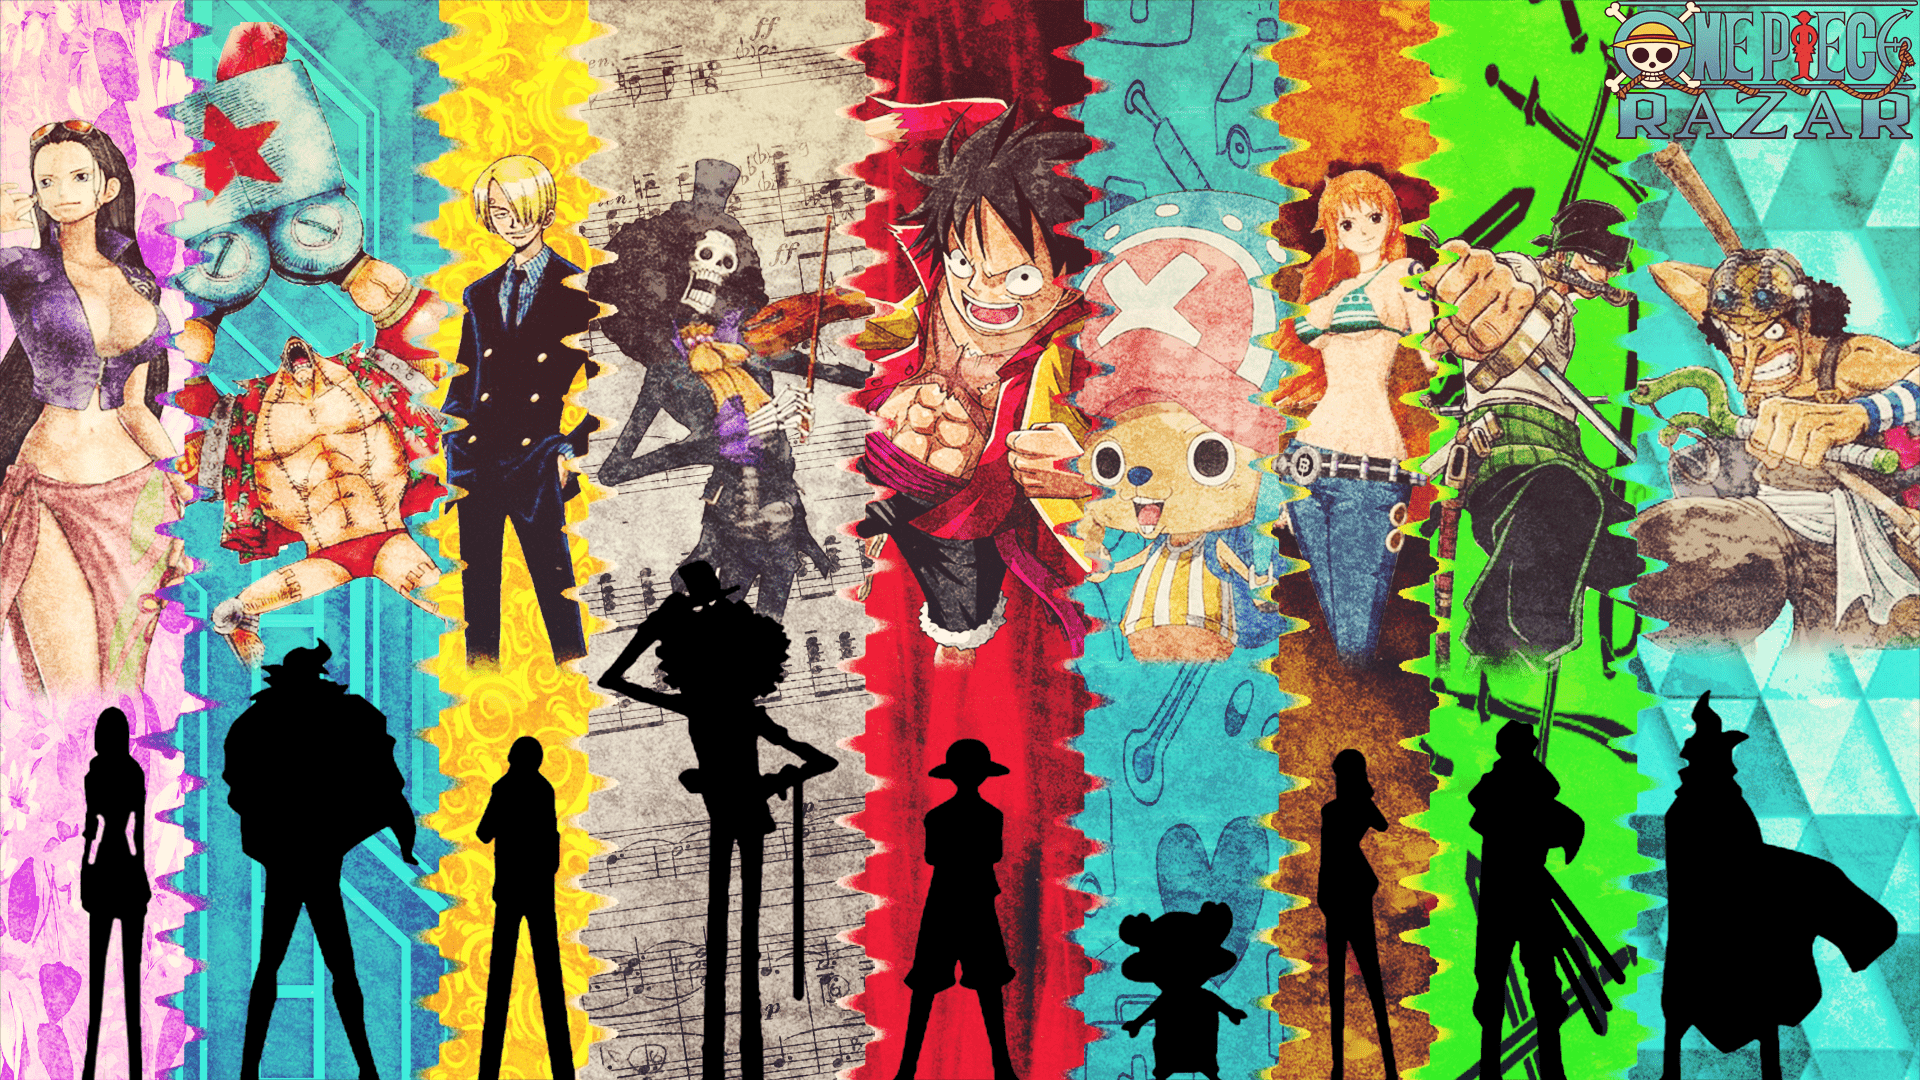 Đừng bỏ lỡ bộ sưu tập hình nền One Piece thú vị và đa dạng này. Với nhiều tùy chọn khác nhau về màu sắc, độ phân giải và thiết kế, bạn sẽ luôn tìm được một tấm hình nền One Piece phù hợp với phong cách của mình. Hãy trang trí máy tính của mình với những hình nền độc đáo và đẹp mắt nhất.